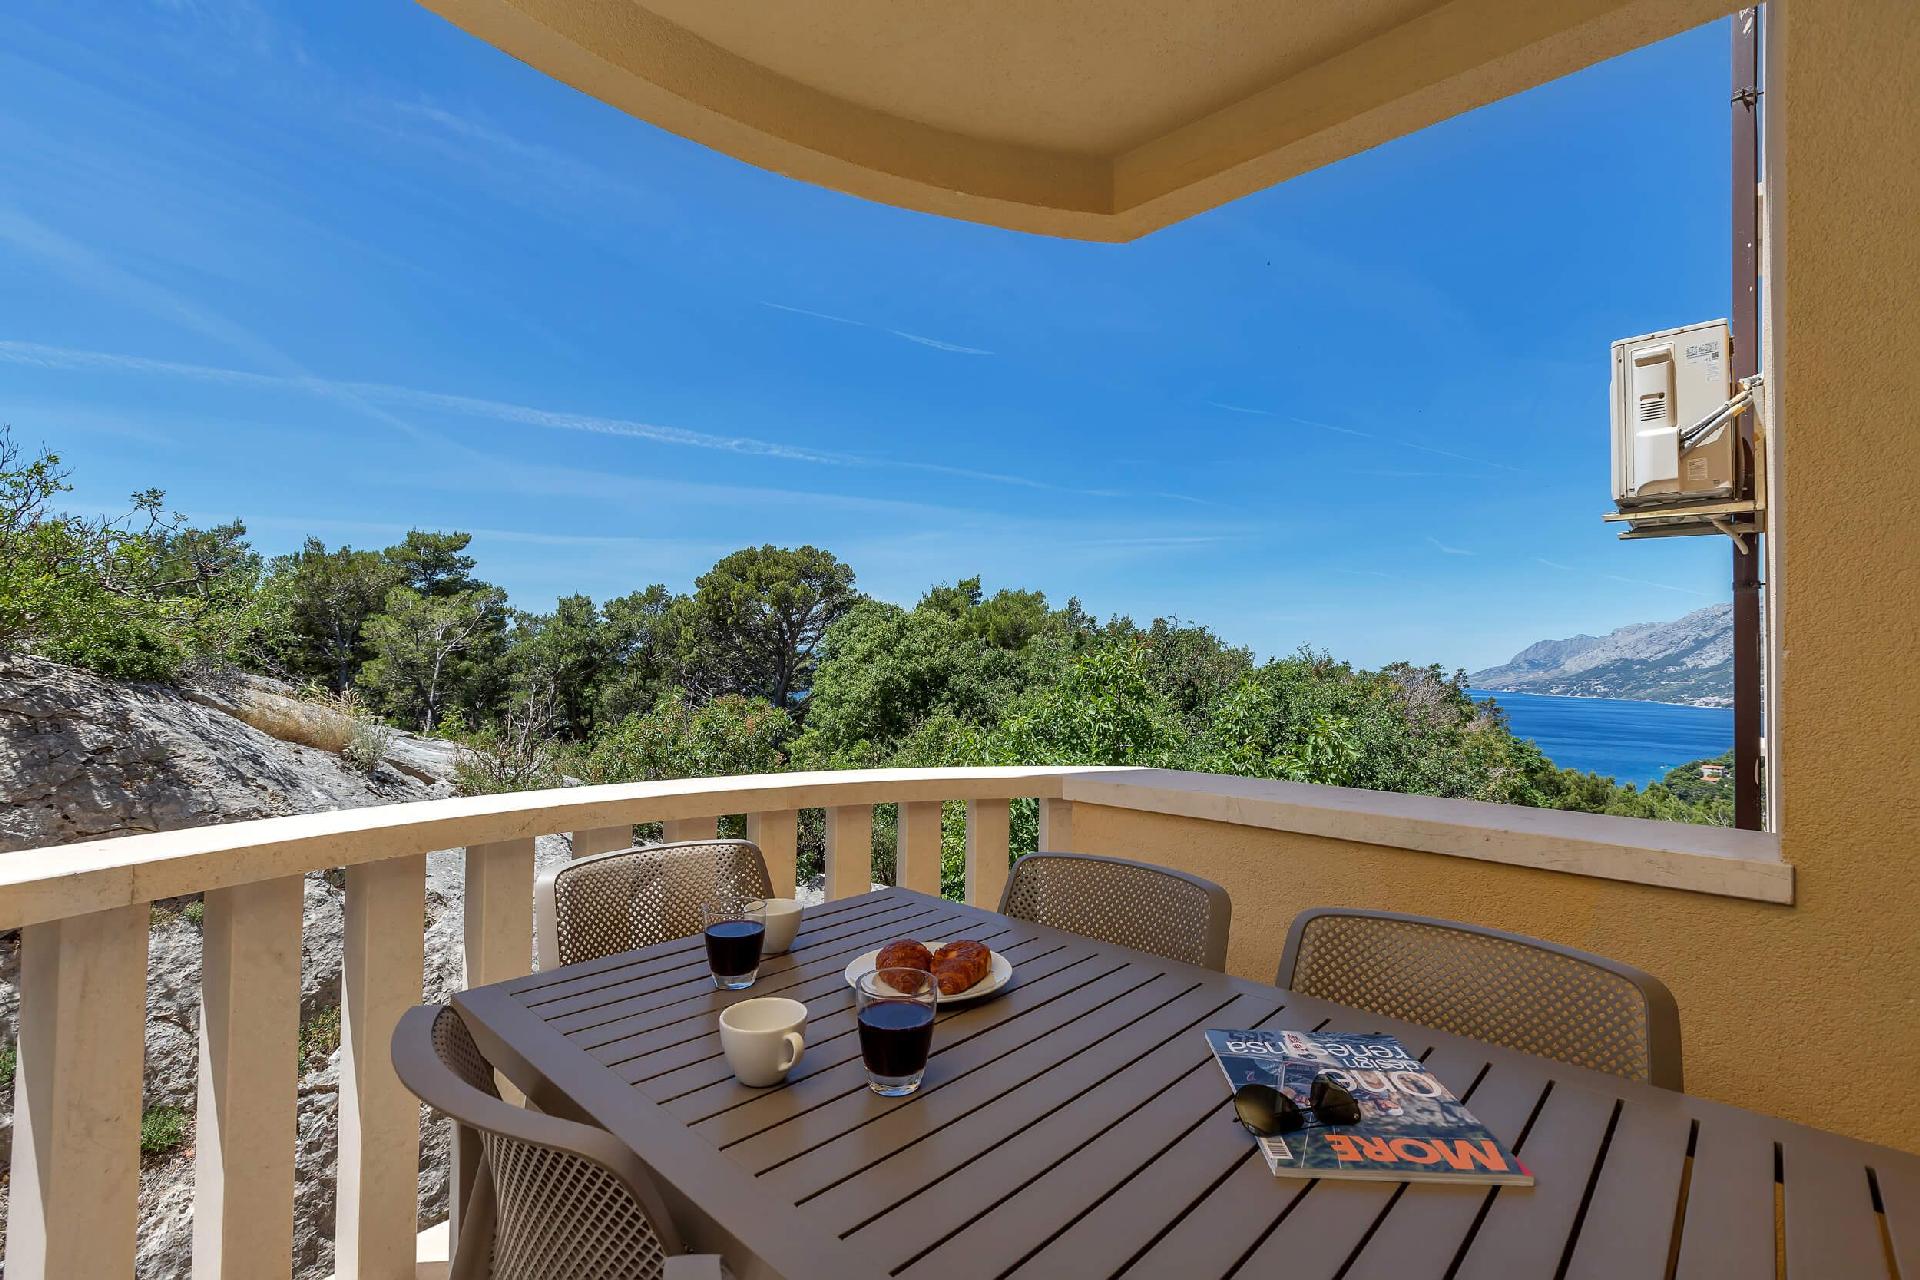 Ferienwohnung für 8 Personen ca. 100 m²  Ferienhaus in Dalmatien